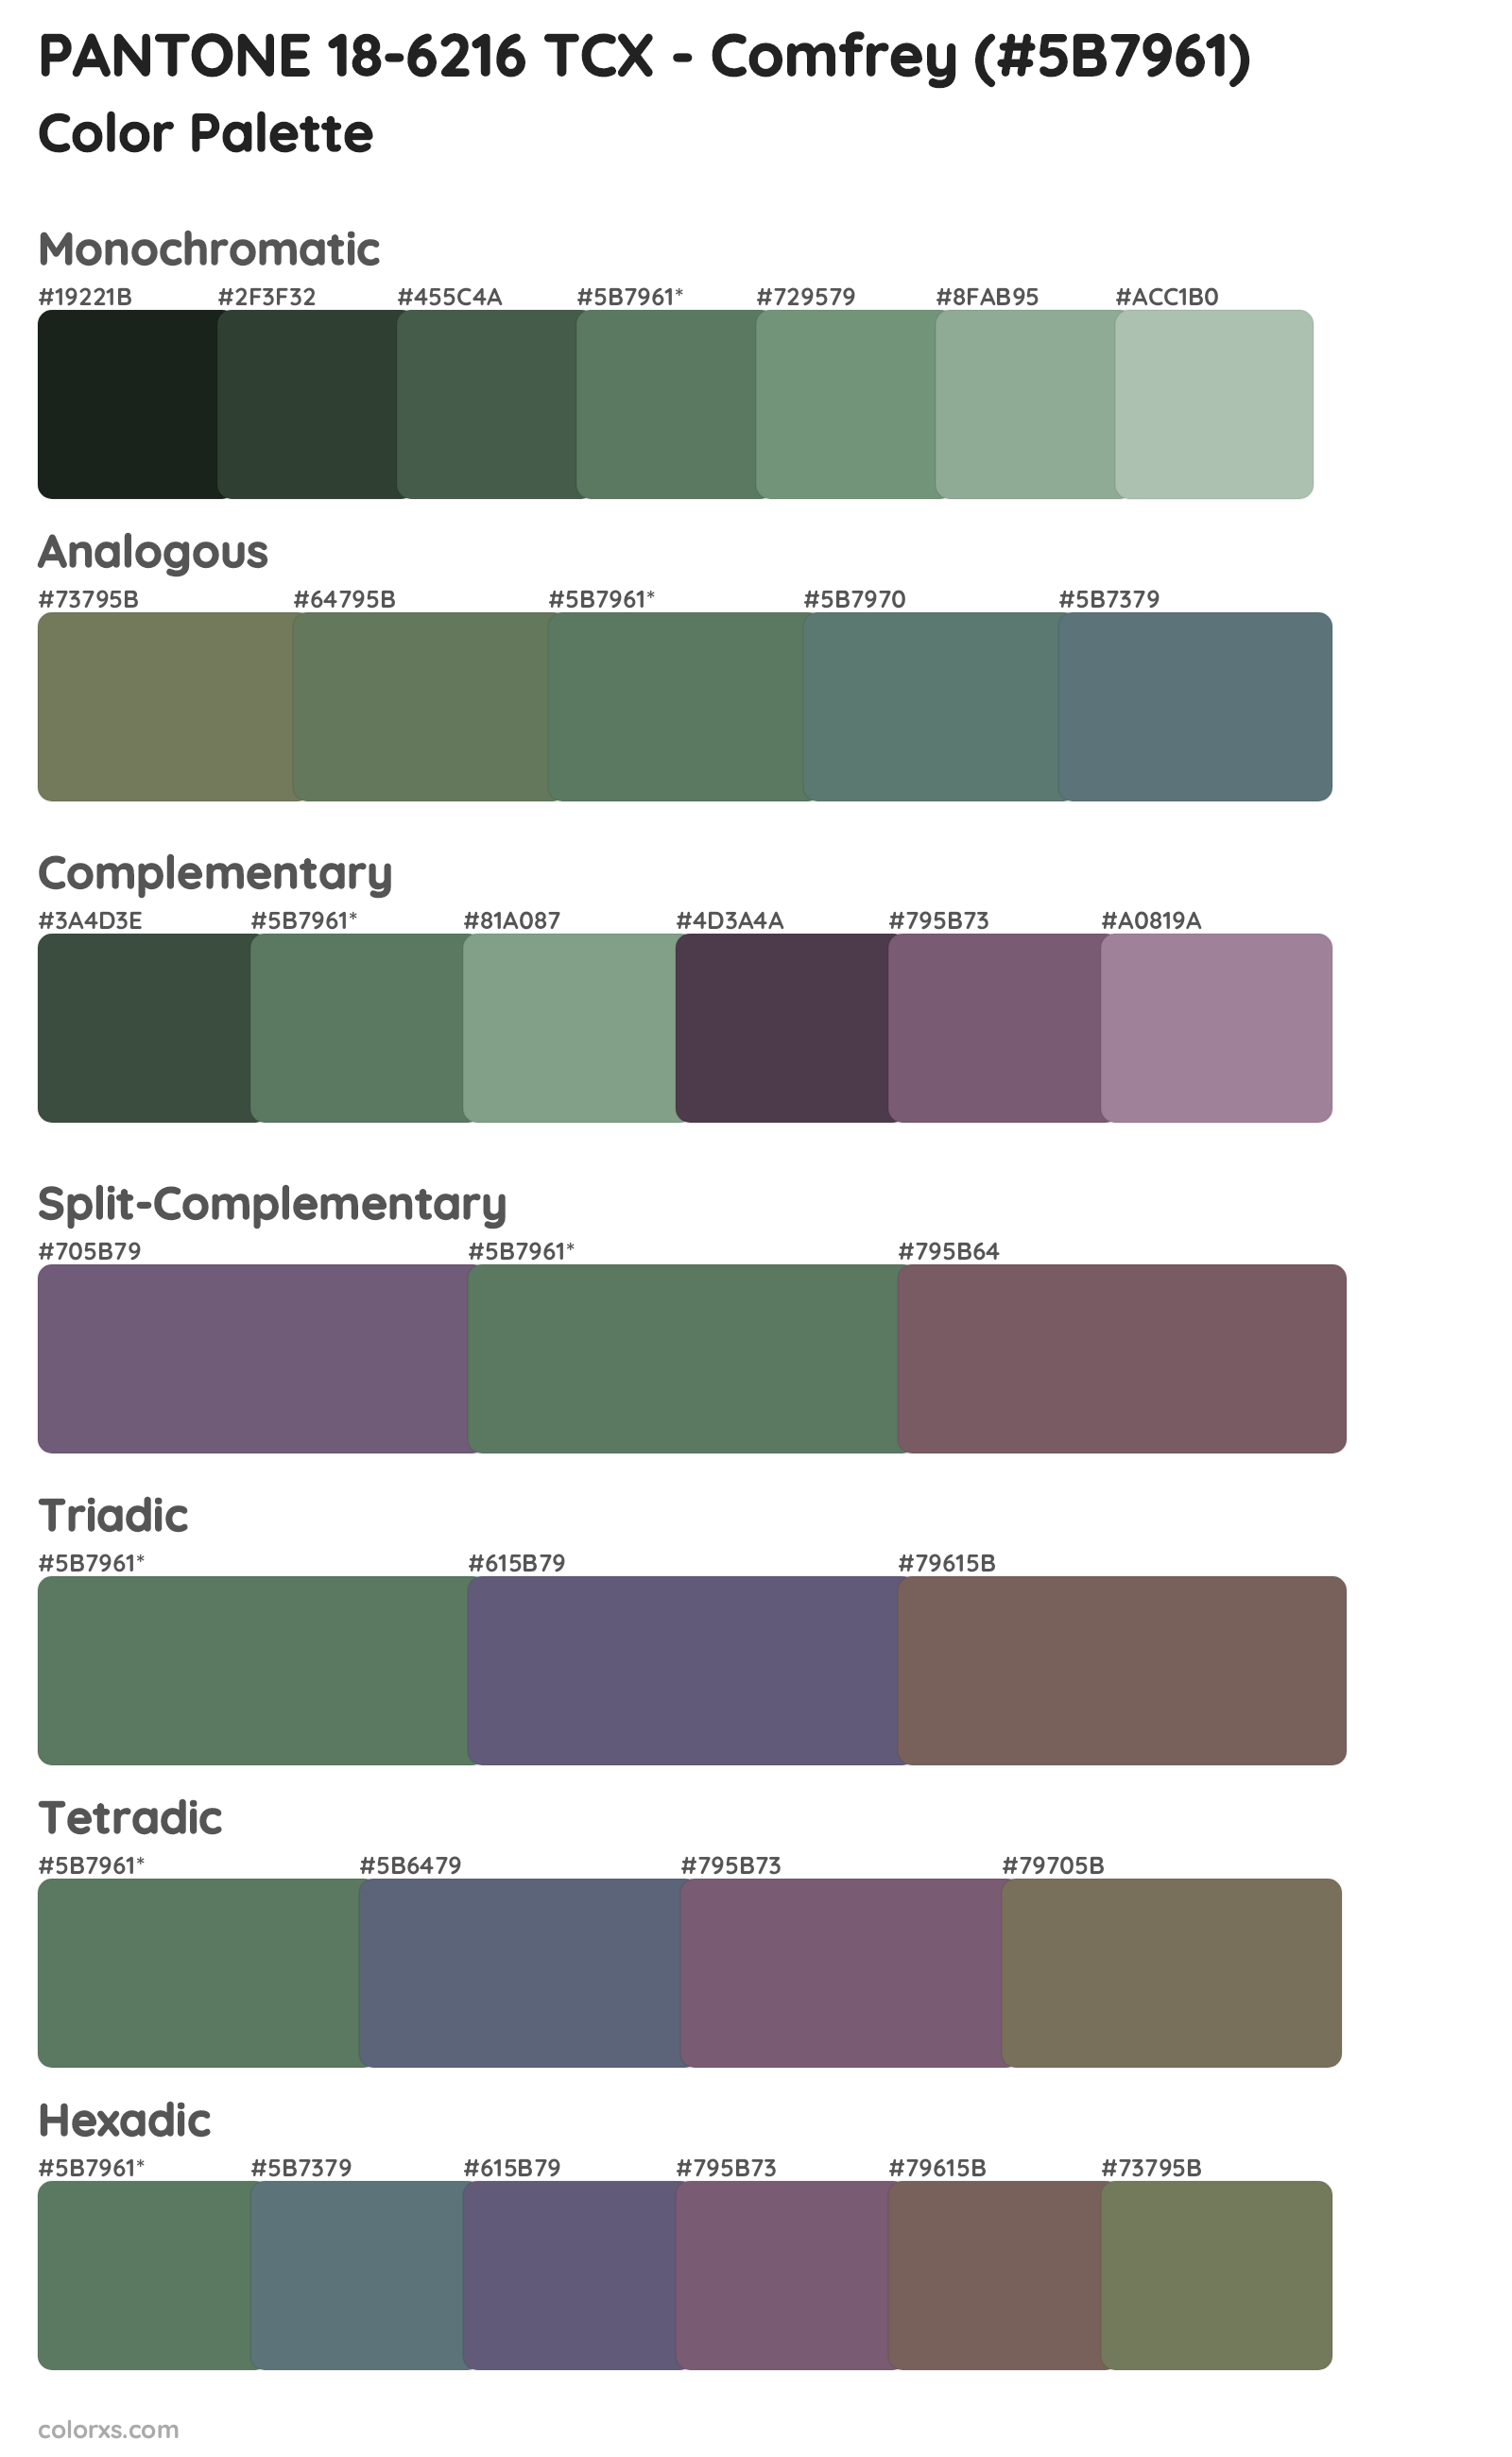 PANTONE 18-6216 TCX - Comfrey Color Scheme Palettes